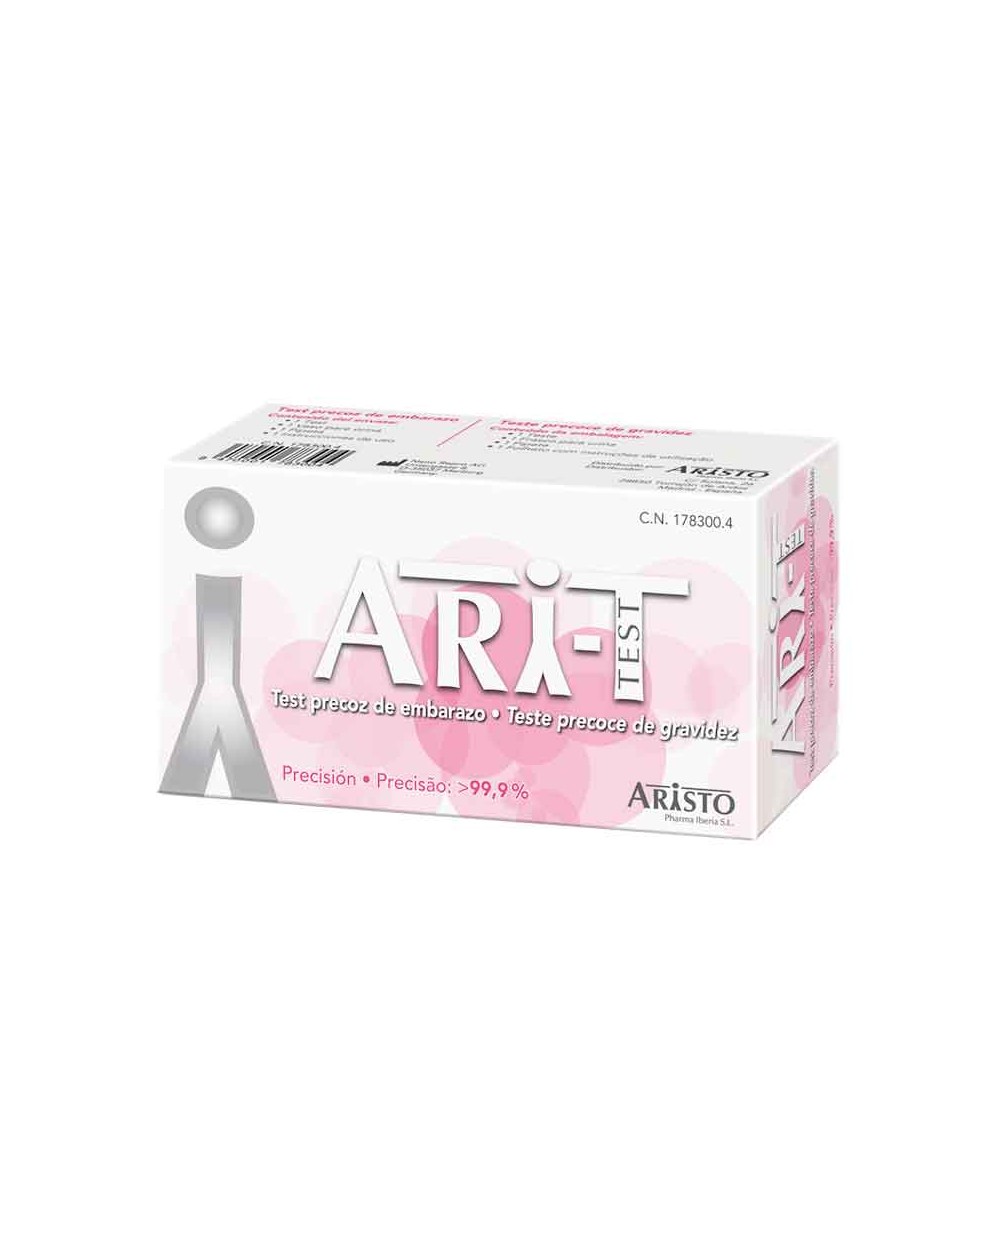 Test precoz de embarazo Ari-T de Aristo alta precisión – 1 tira reactiva